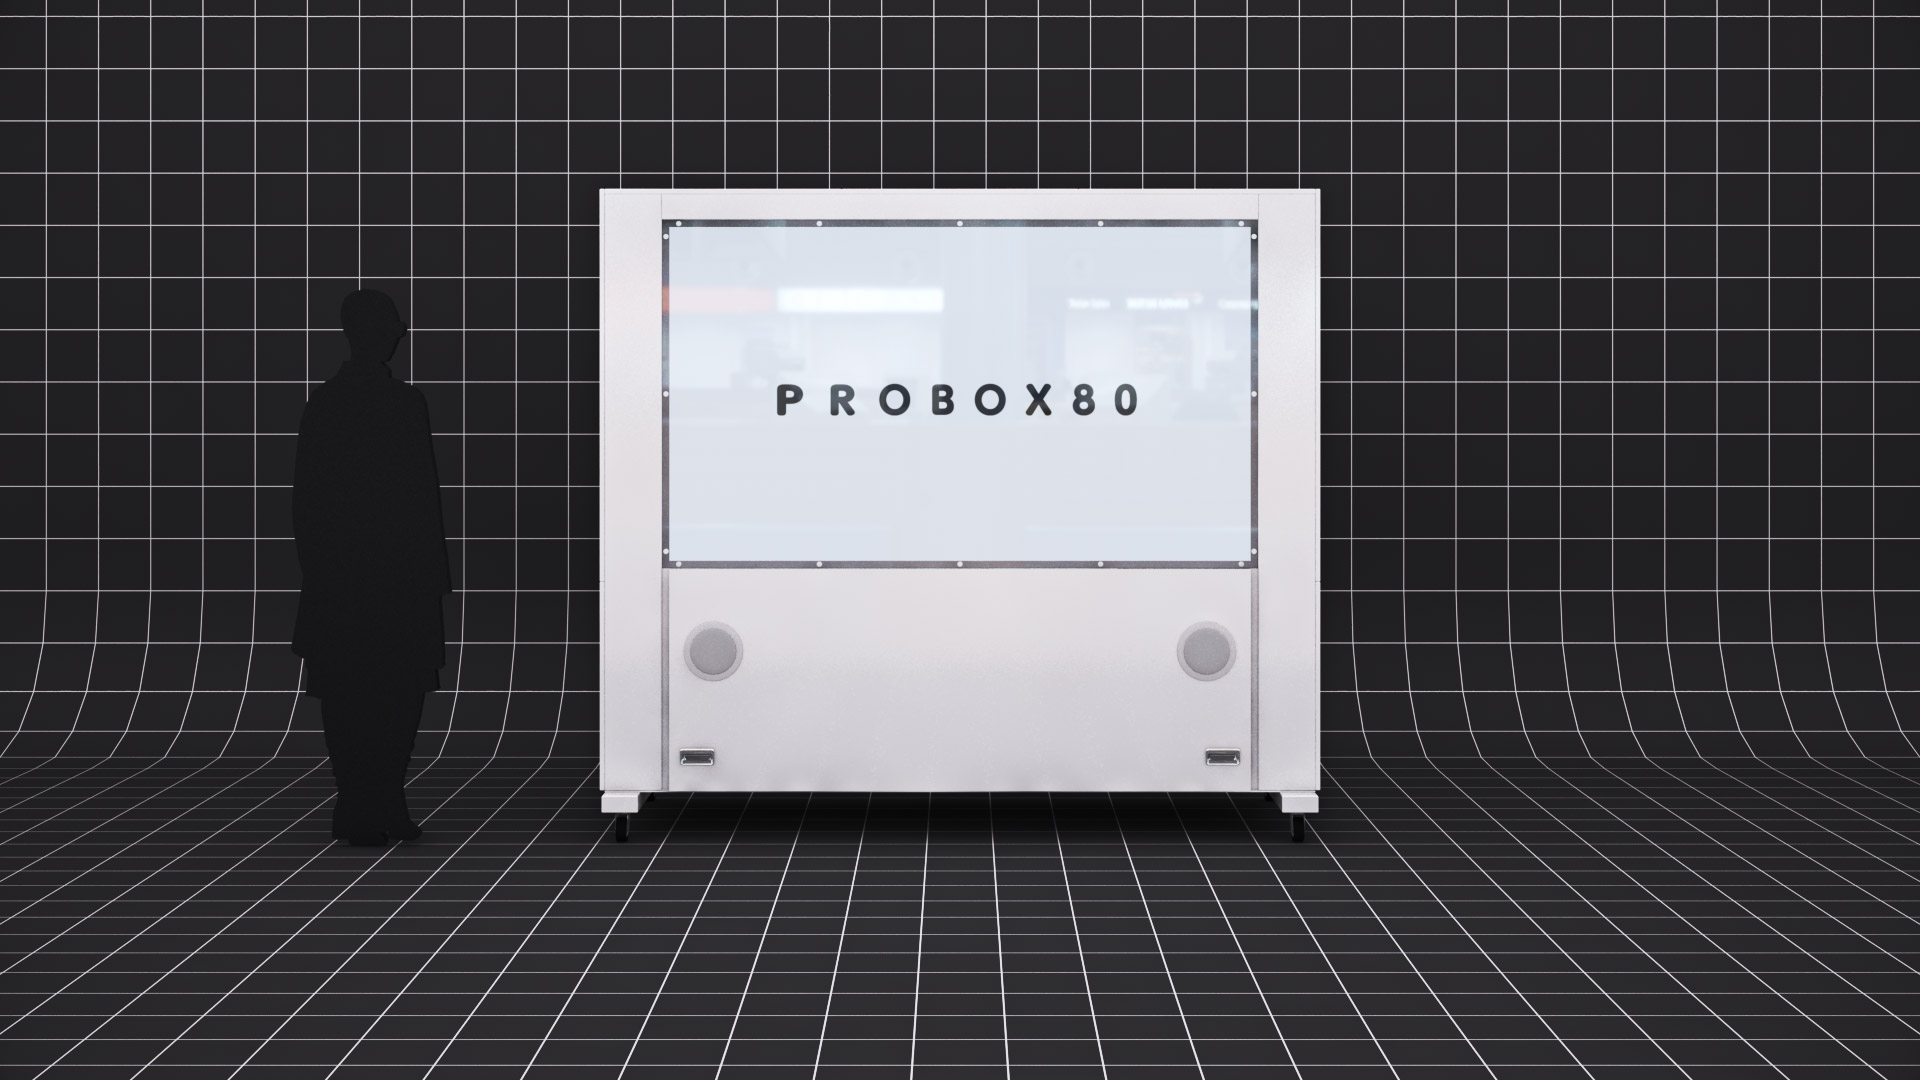 PROBOX80